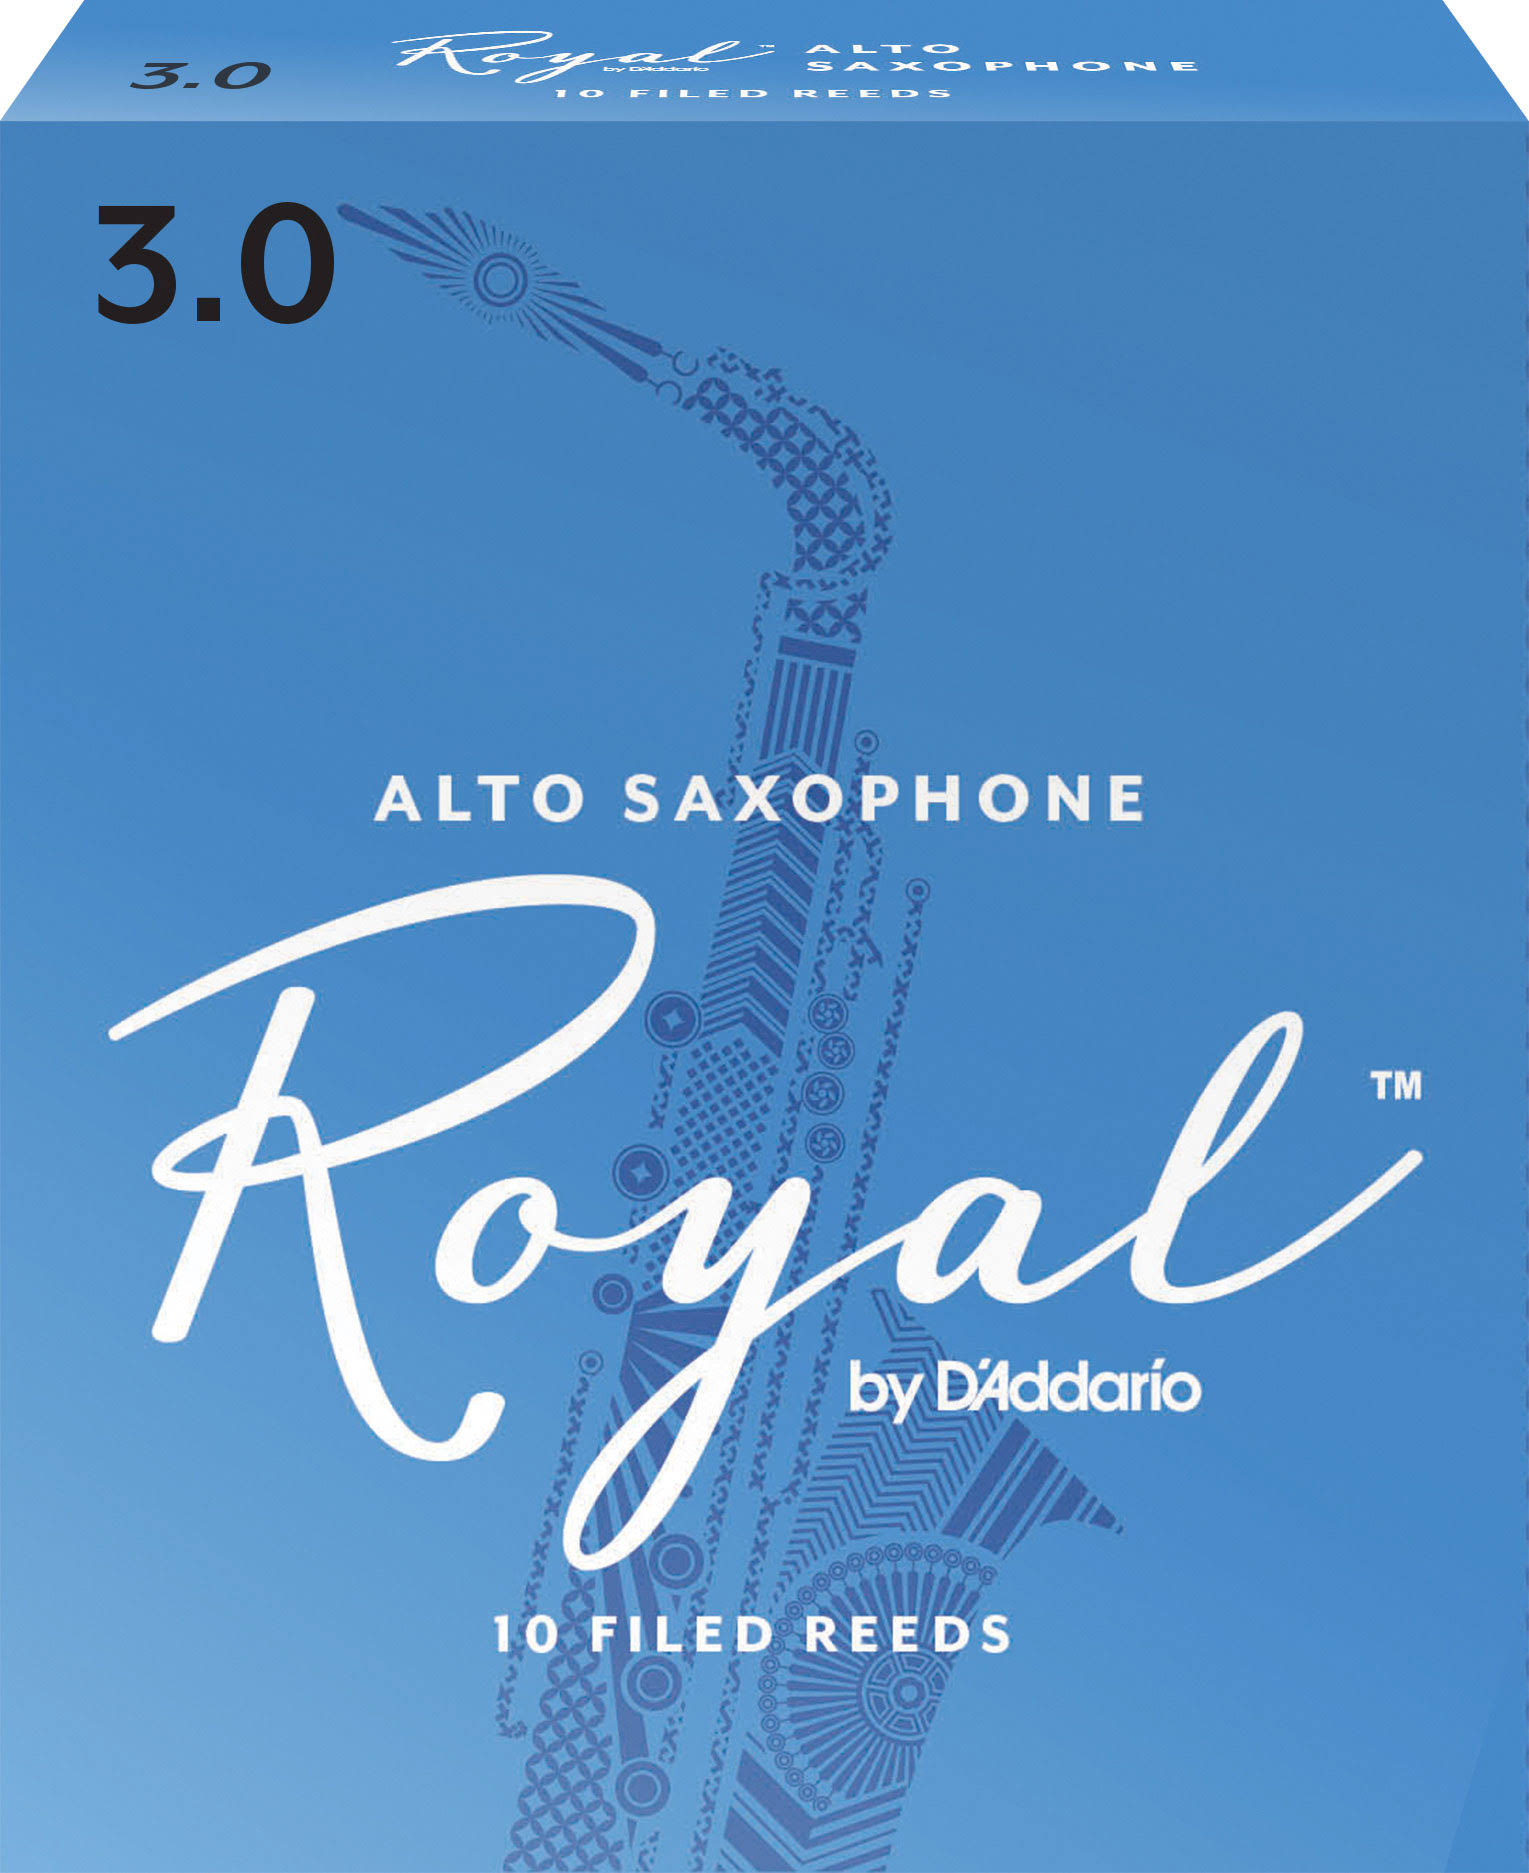 Rico Royal Alto Sax Reeds - Strength 3, 10 Pack